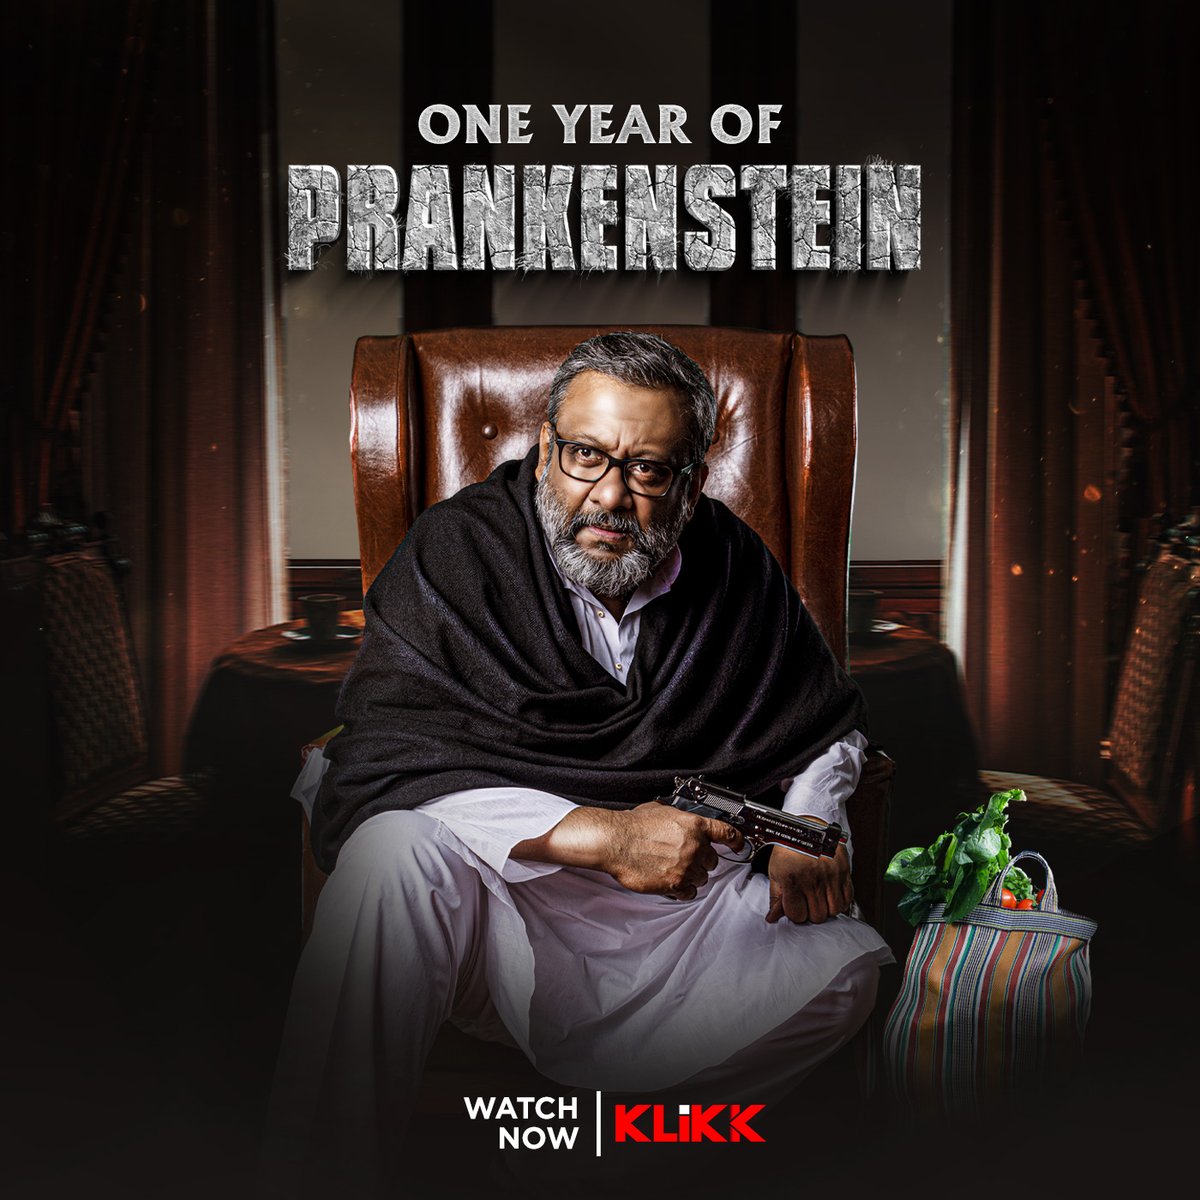 Celebrating one year of #Prankenstein ✨
#Klikk #BinodonJokhonTokhon